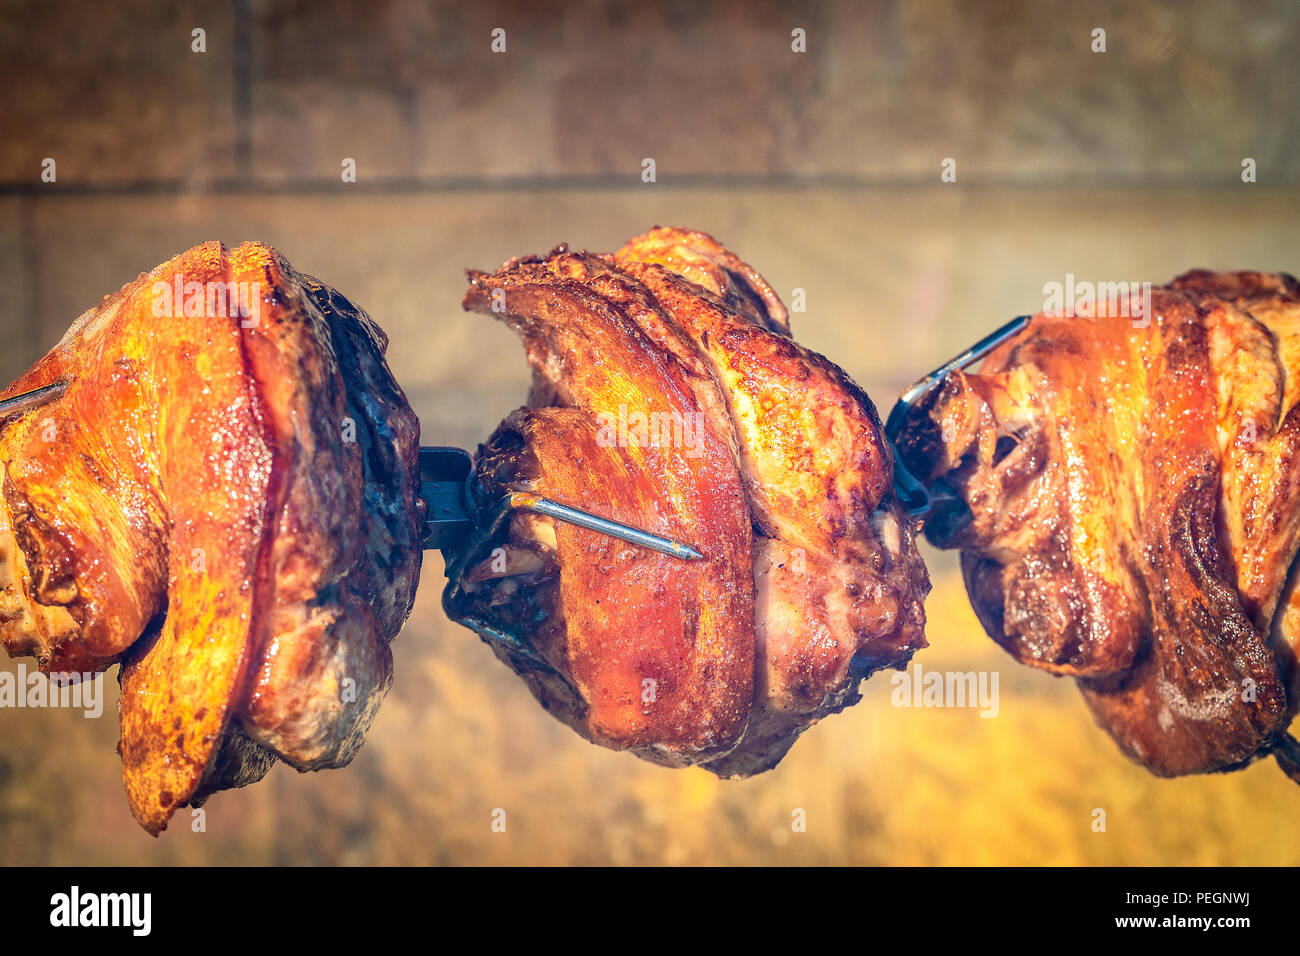 Traditionelle geröstete Schaft Schinken kochen auf Holzkohle spit Röster  Stockfotografie - Alamy